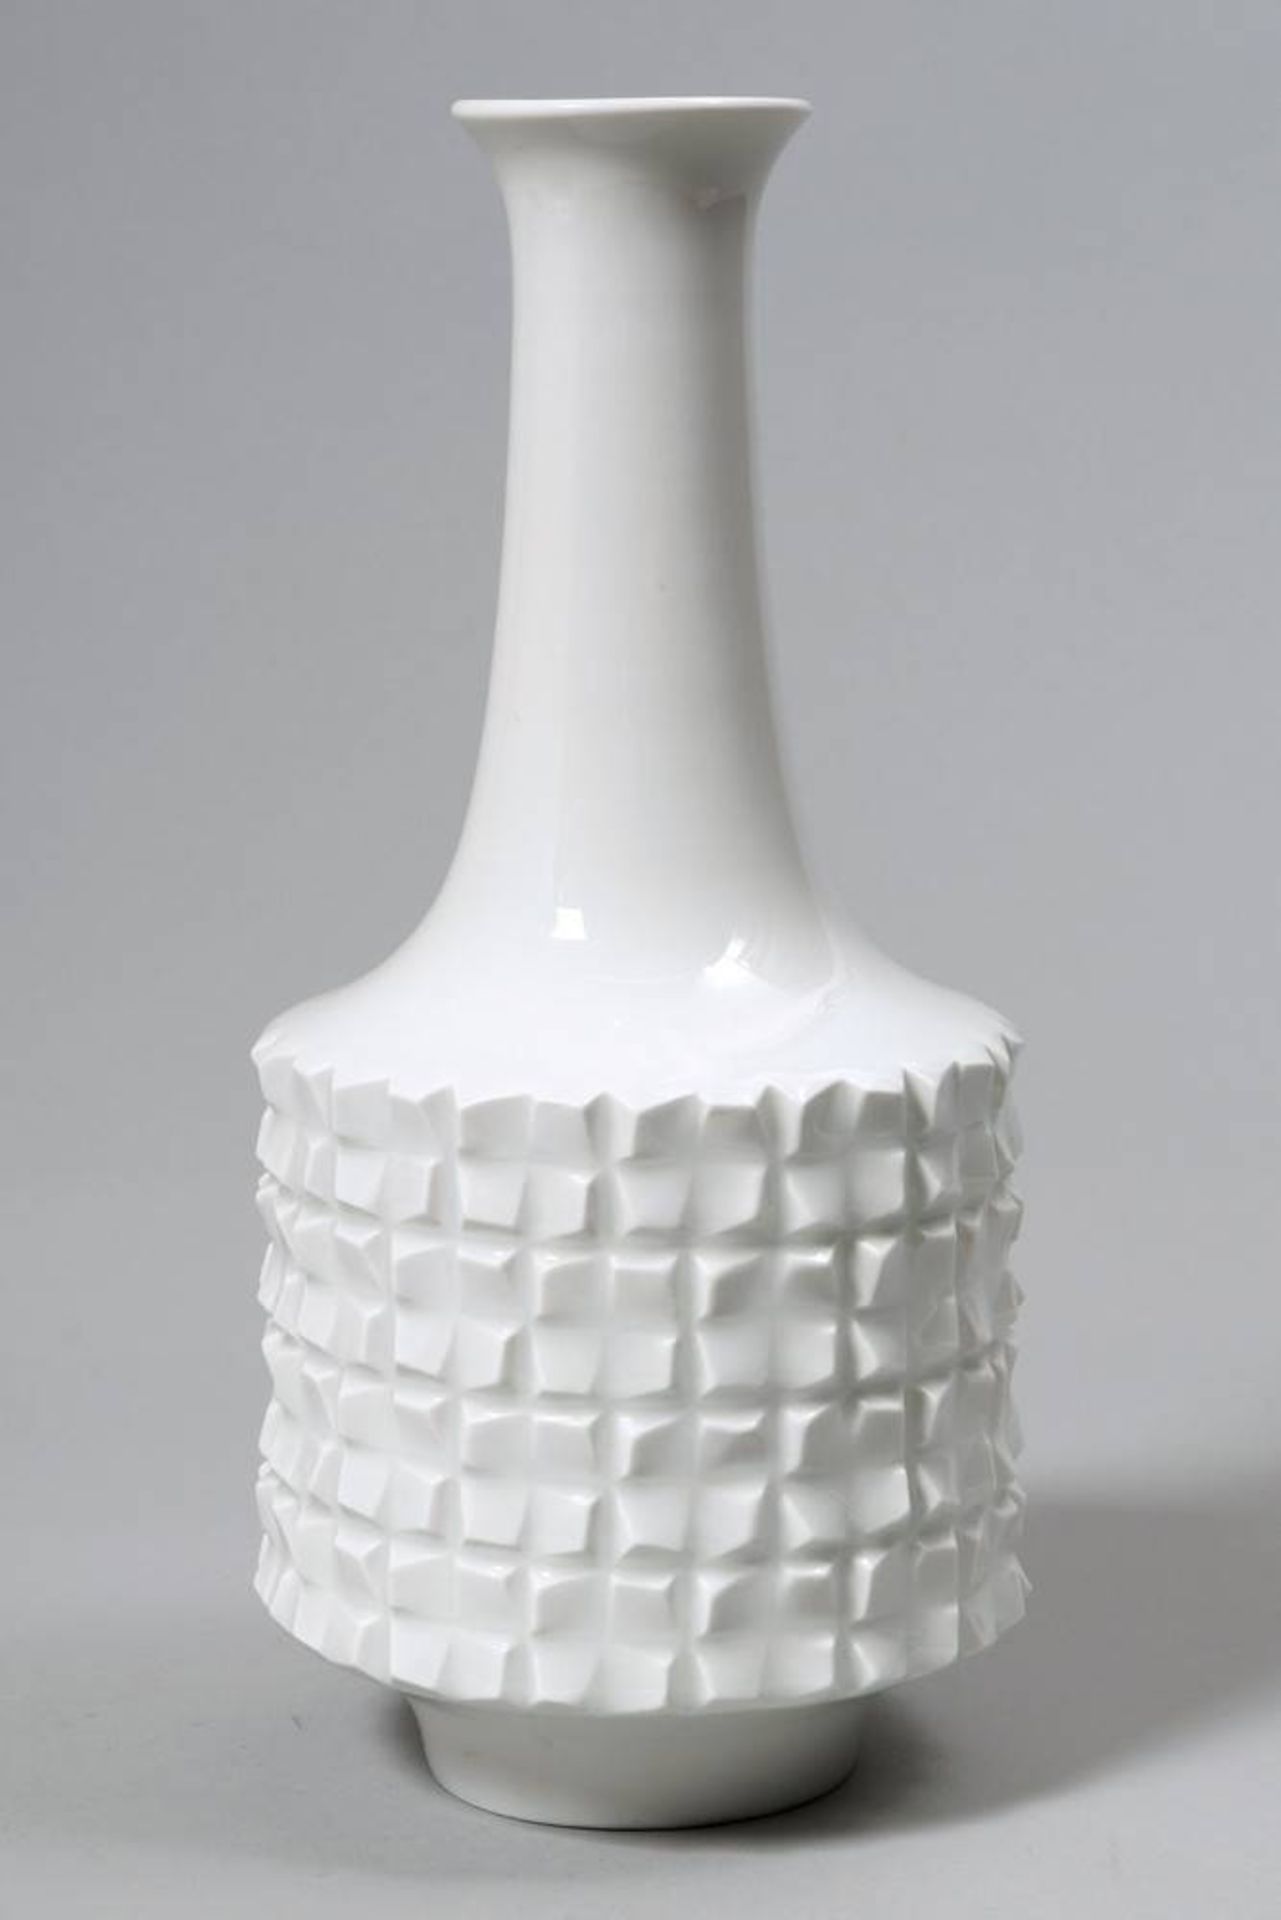 Vase Design Ludwig Zepner for Meissen, 1970s, porcelain, sword marks, 3 grind marks, H: 24cm, foot